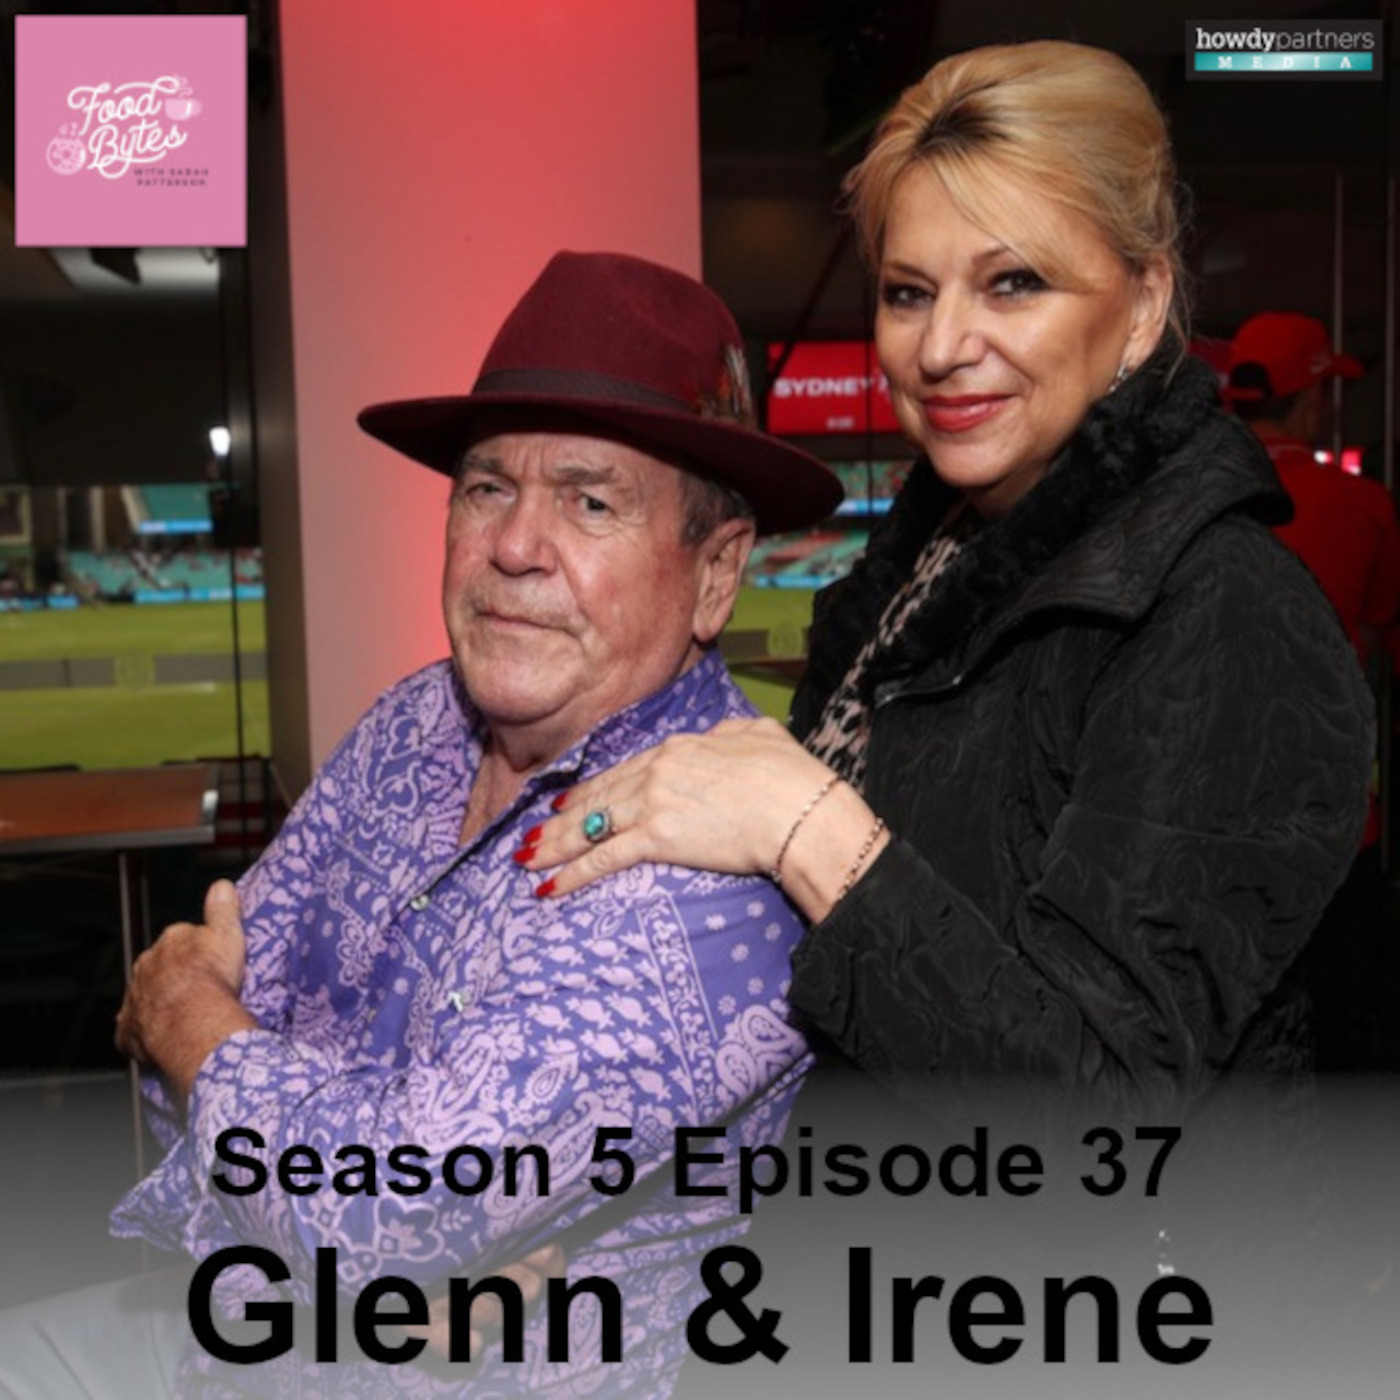 Glenn & Irene